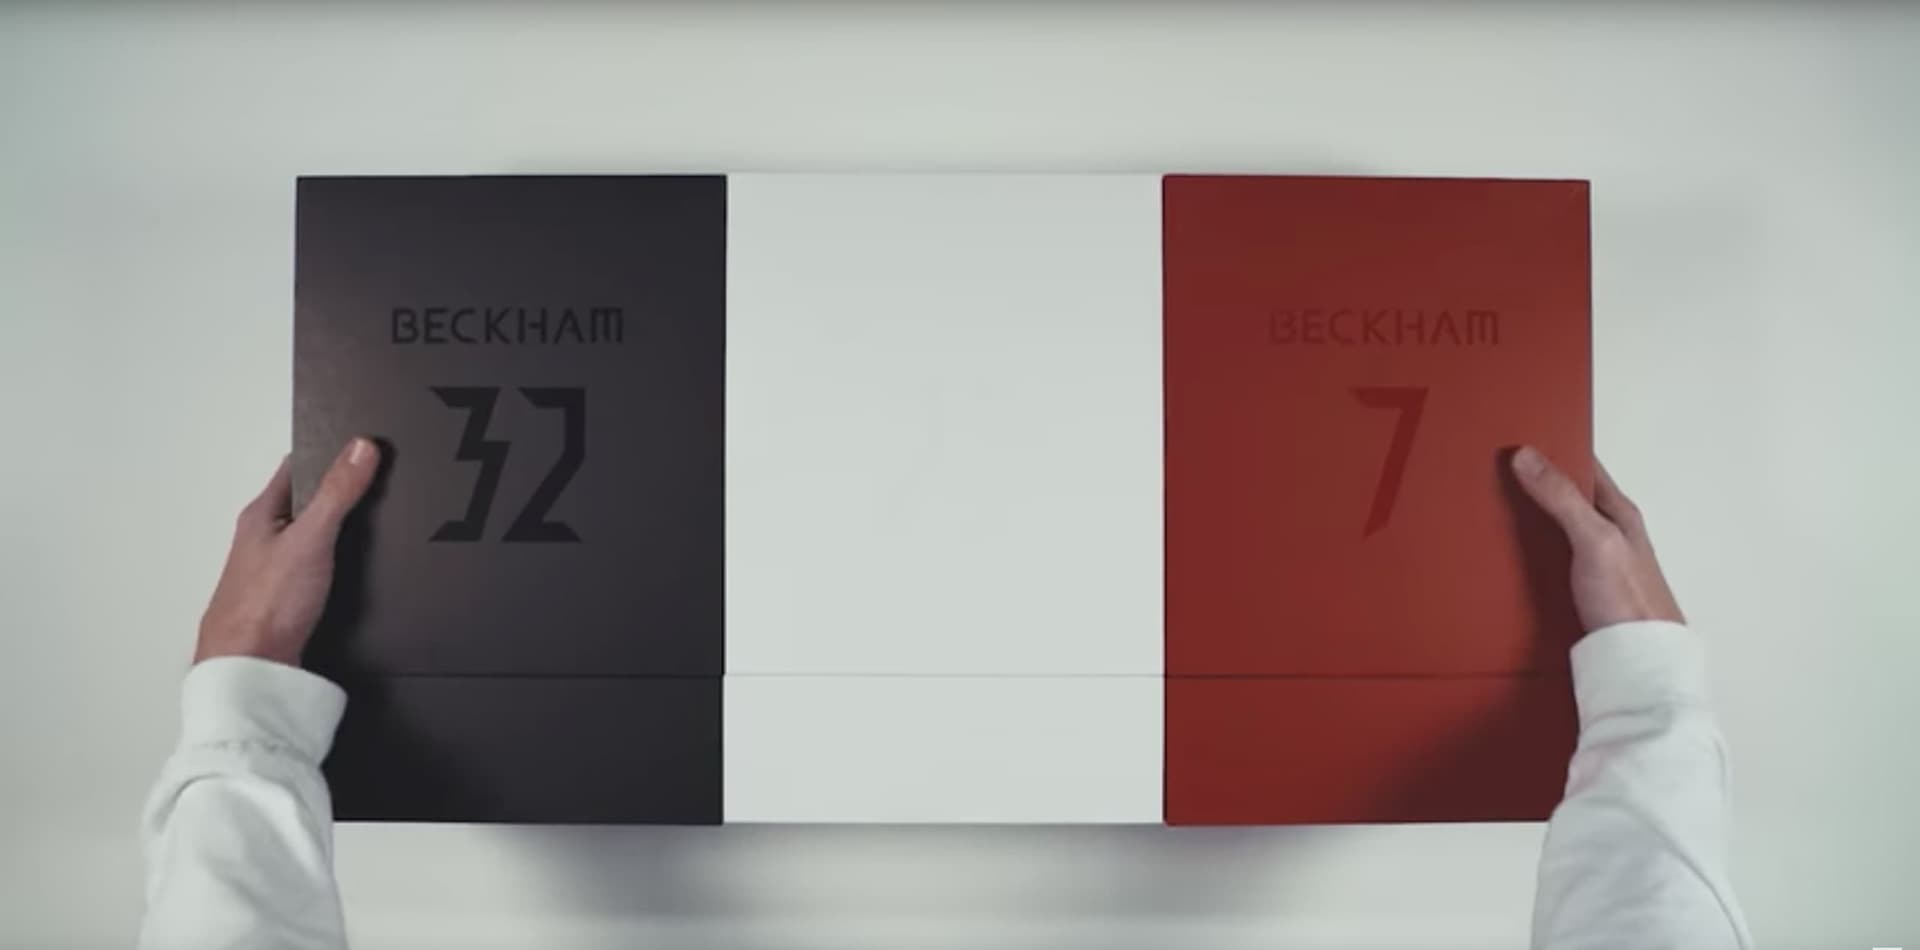 데이비드 베컴 x 아디다스 사커, 프레데터 20주년 기념 언박싱 (David Beckham x adidas Soccer Capsule Collection Predator Unboxing) 1